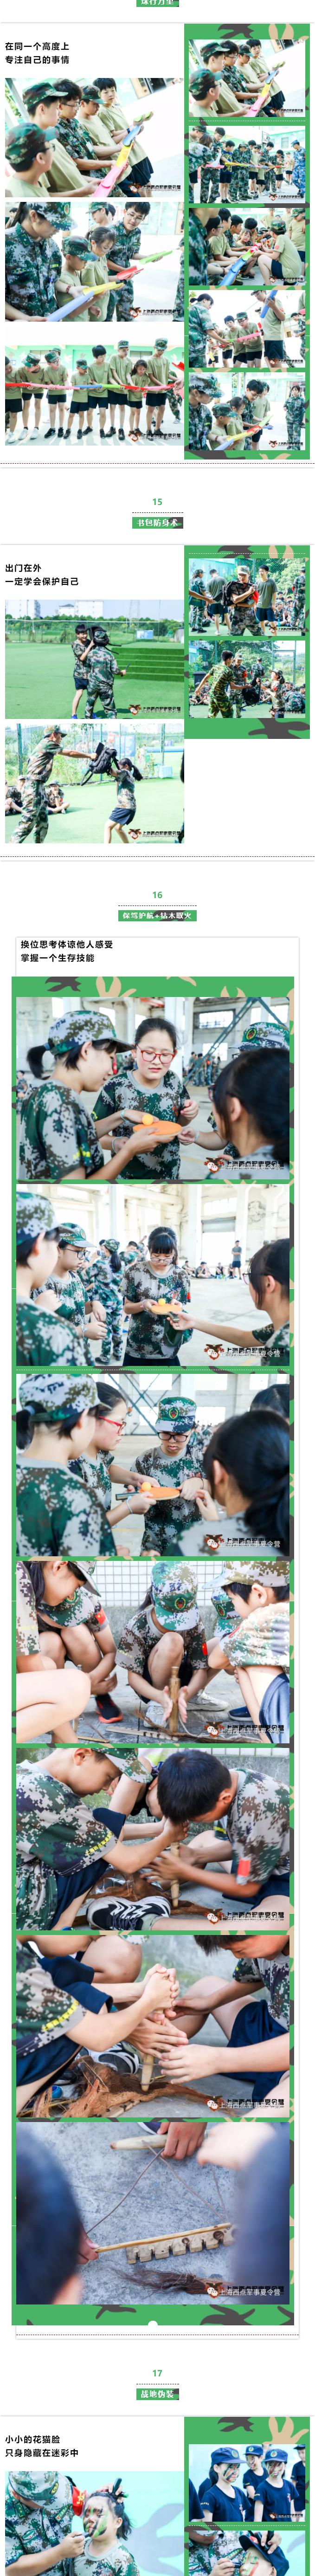 上海西点军事夏令营课程精彩回顾和活动照片